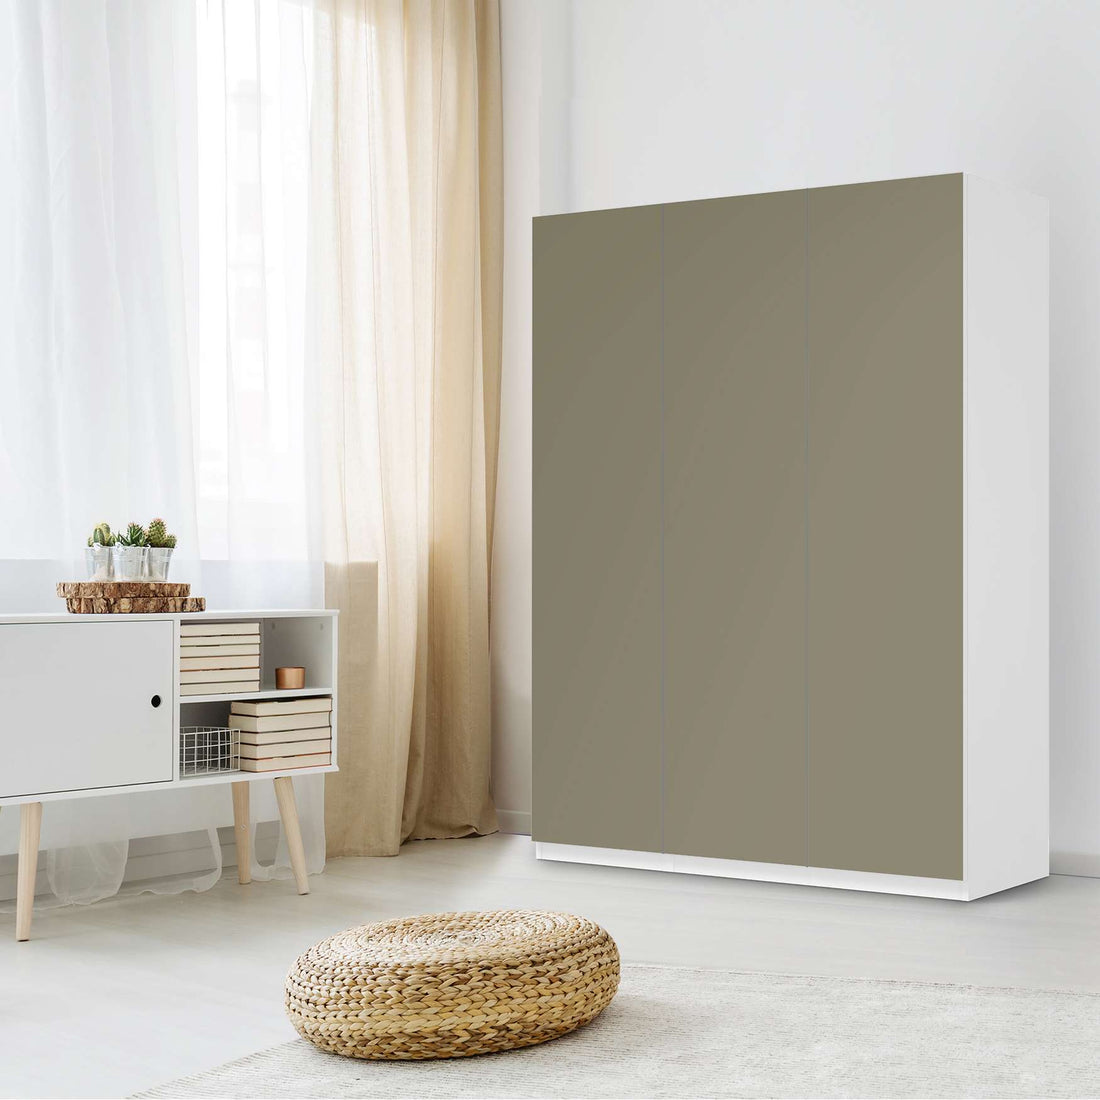 Folie für Möbel Braungrau Light - IKEA Pax Schrank 201 cm Höhe - 3 Türen - Schlafzimmer